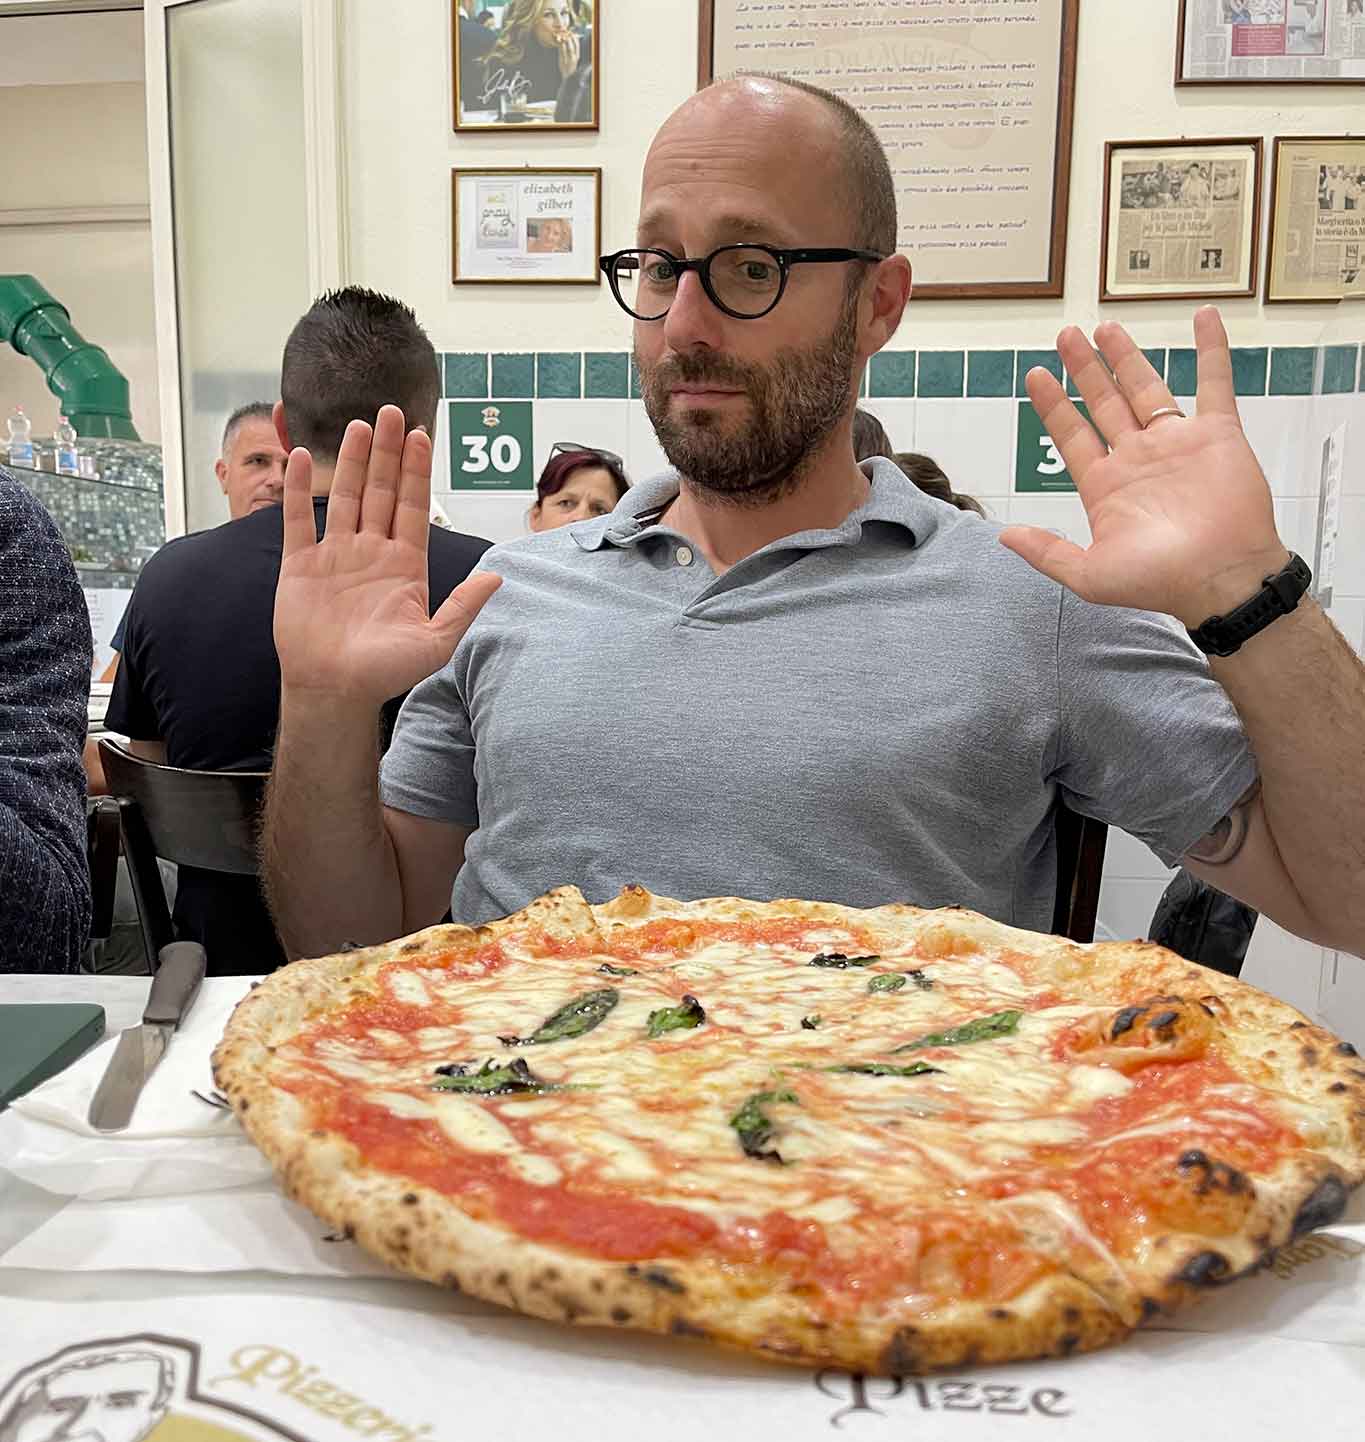 caro-bollette:-la-pizzeria-da-michele-alza-il-prezzo-della-pizza-di-1-euro!